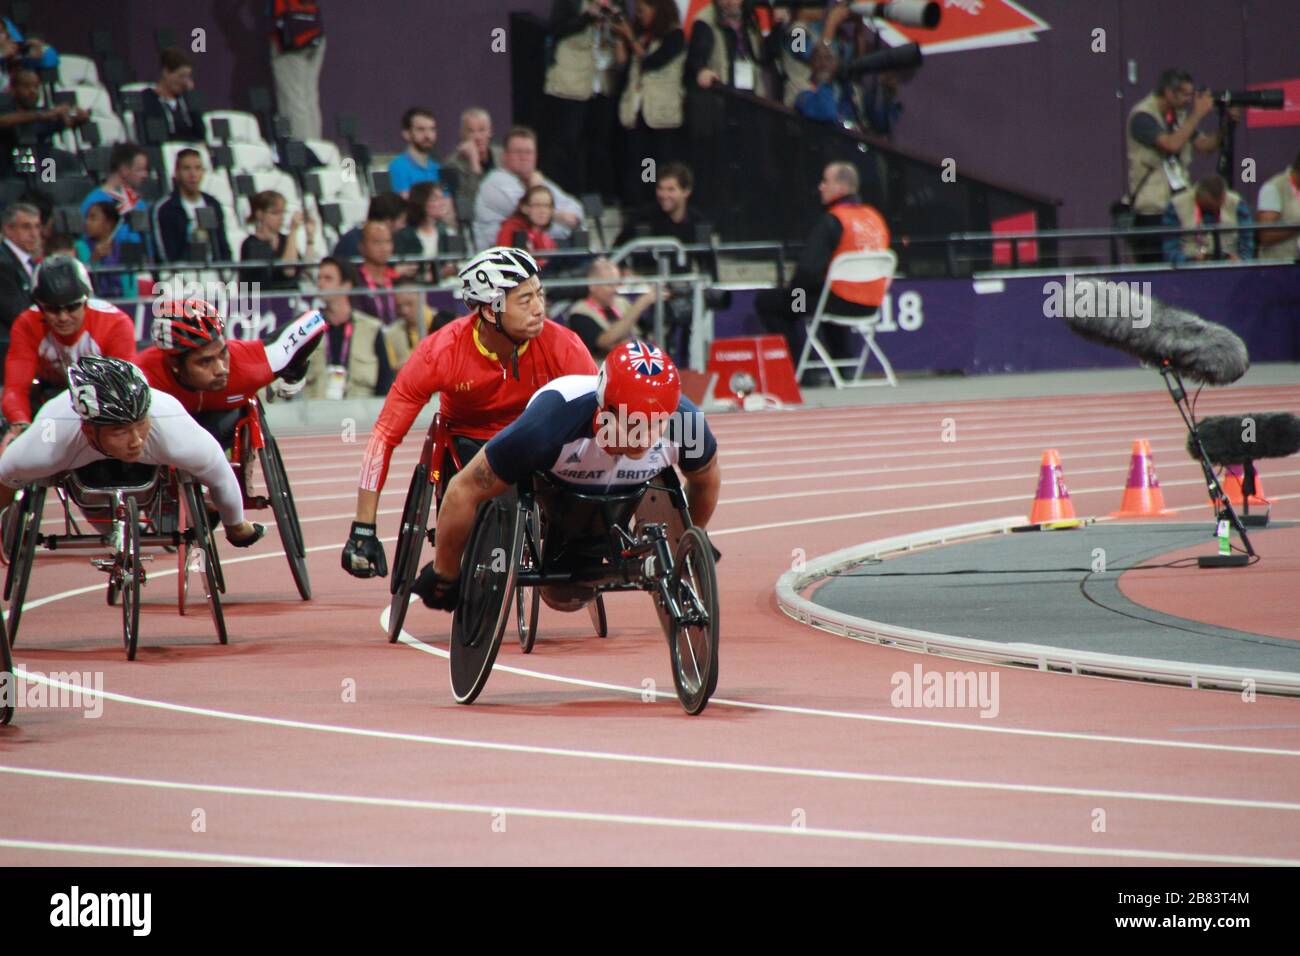 Uomini T54 5000 m corsa in sedia a rotelle con medaglia d'oro David Weir alle Paralimpiadi estive 2012 Foto Stock